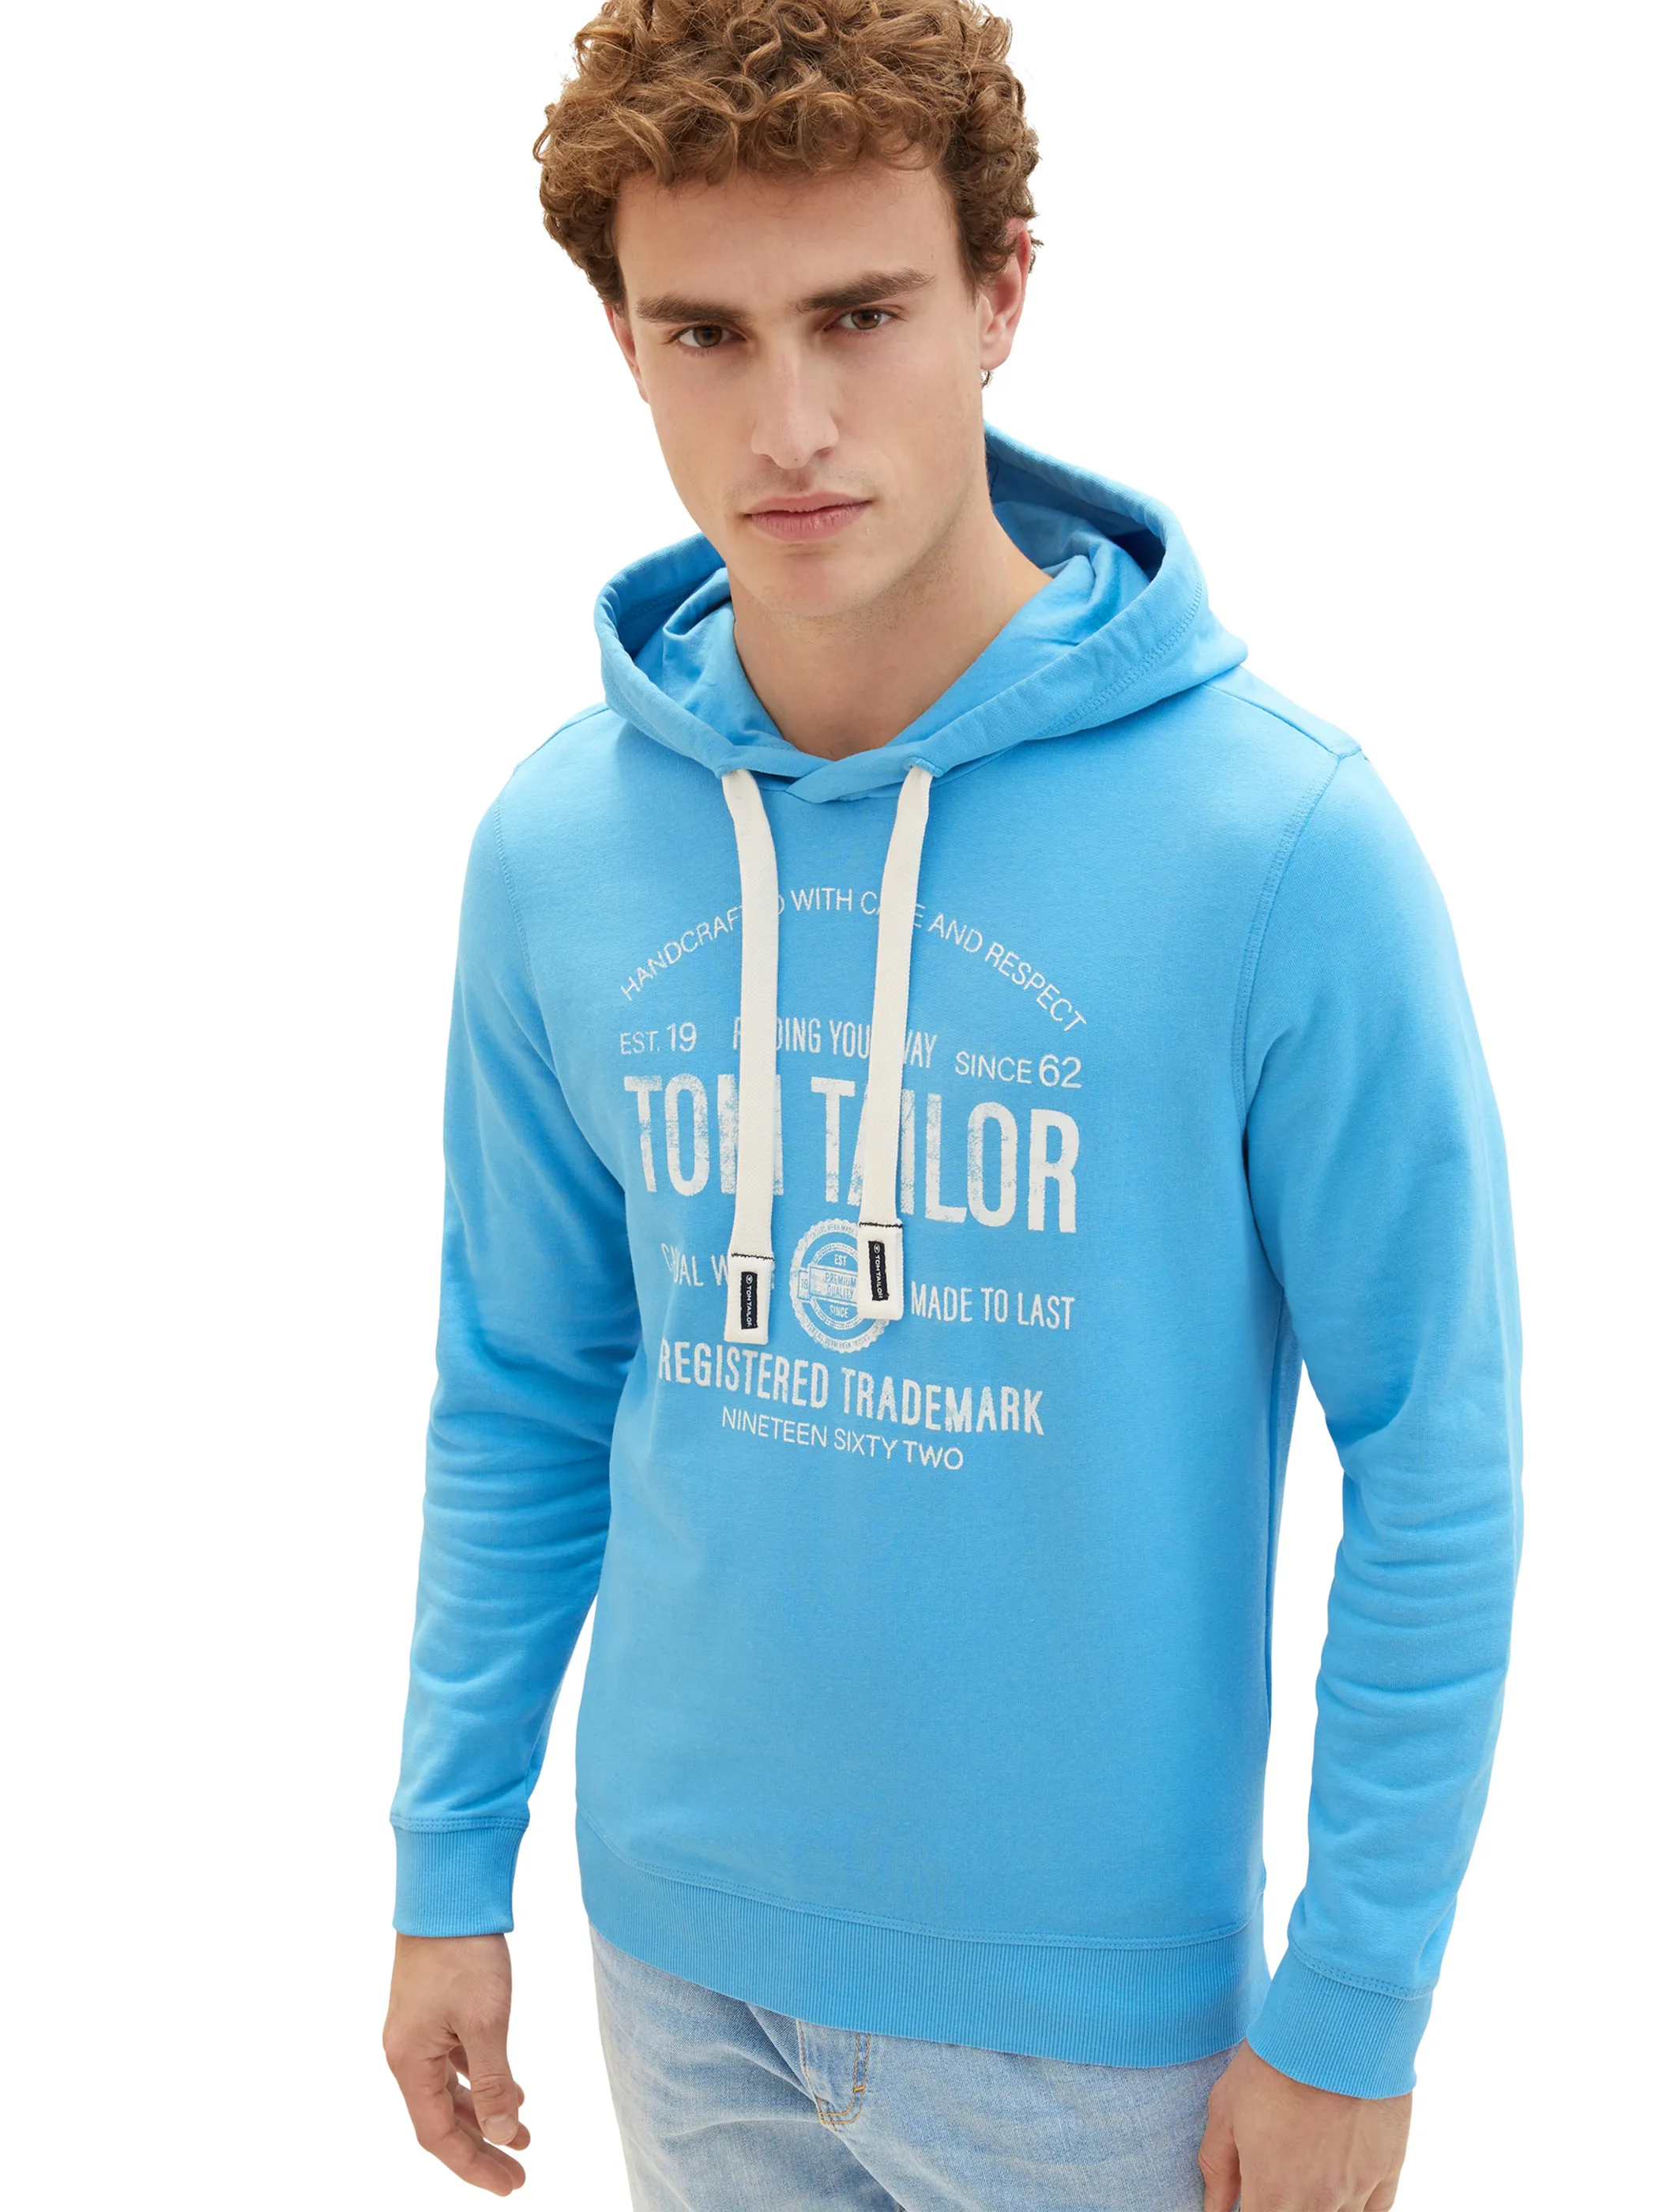 Tom Tailor 1038605 hoodie with print Blau 880532 18395 4